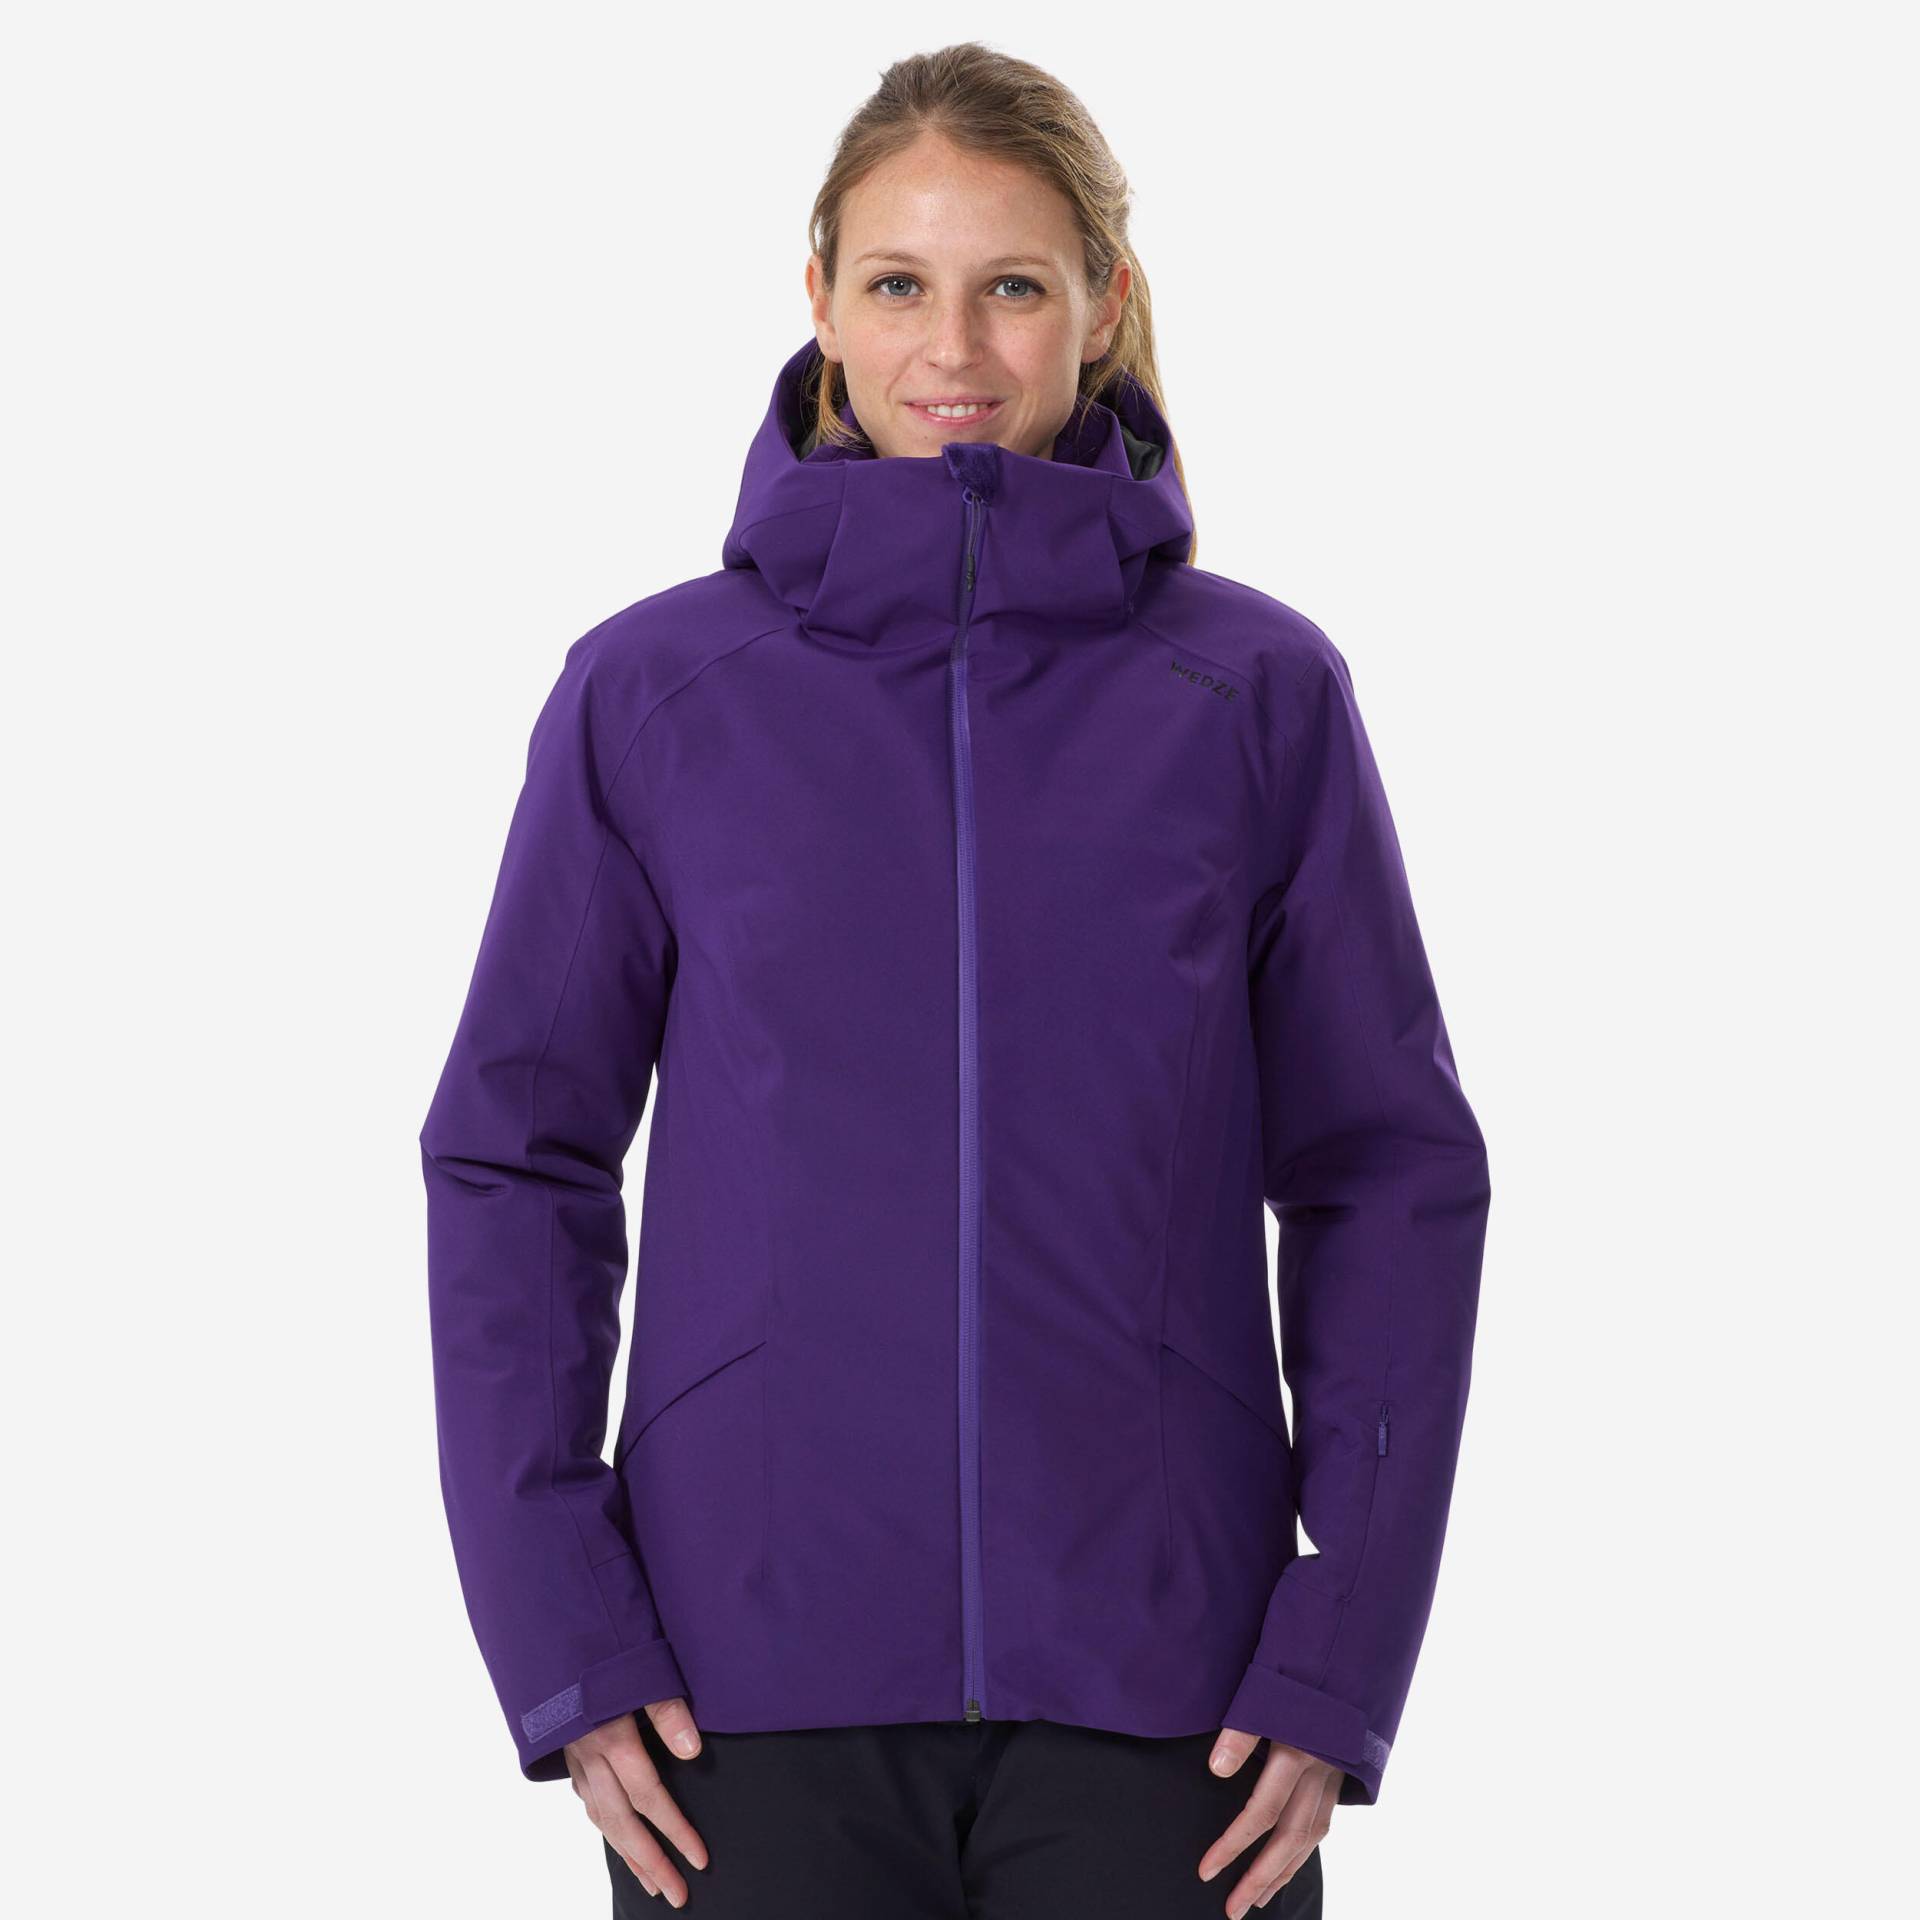 Skijacke Damen warm - 500 violett von WEDZE